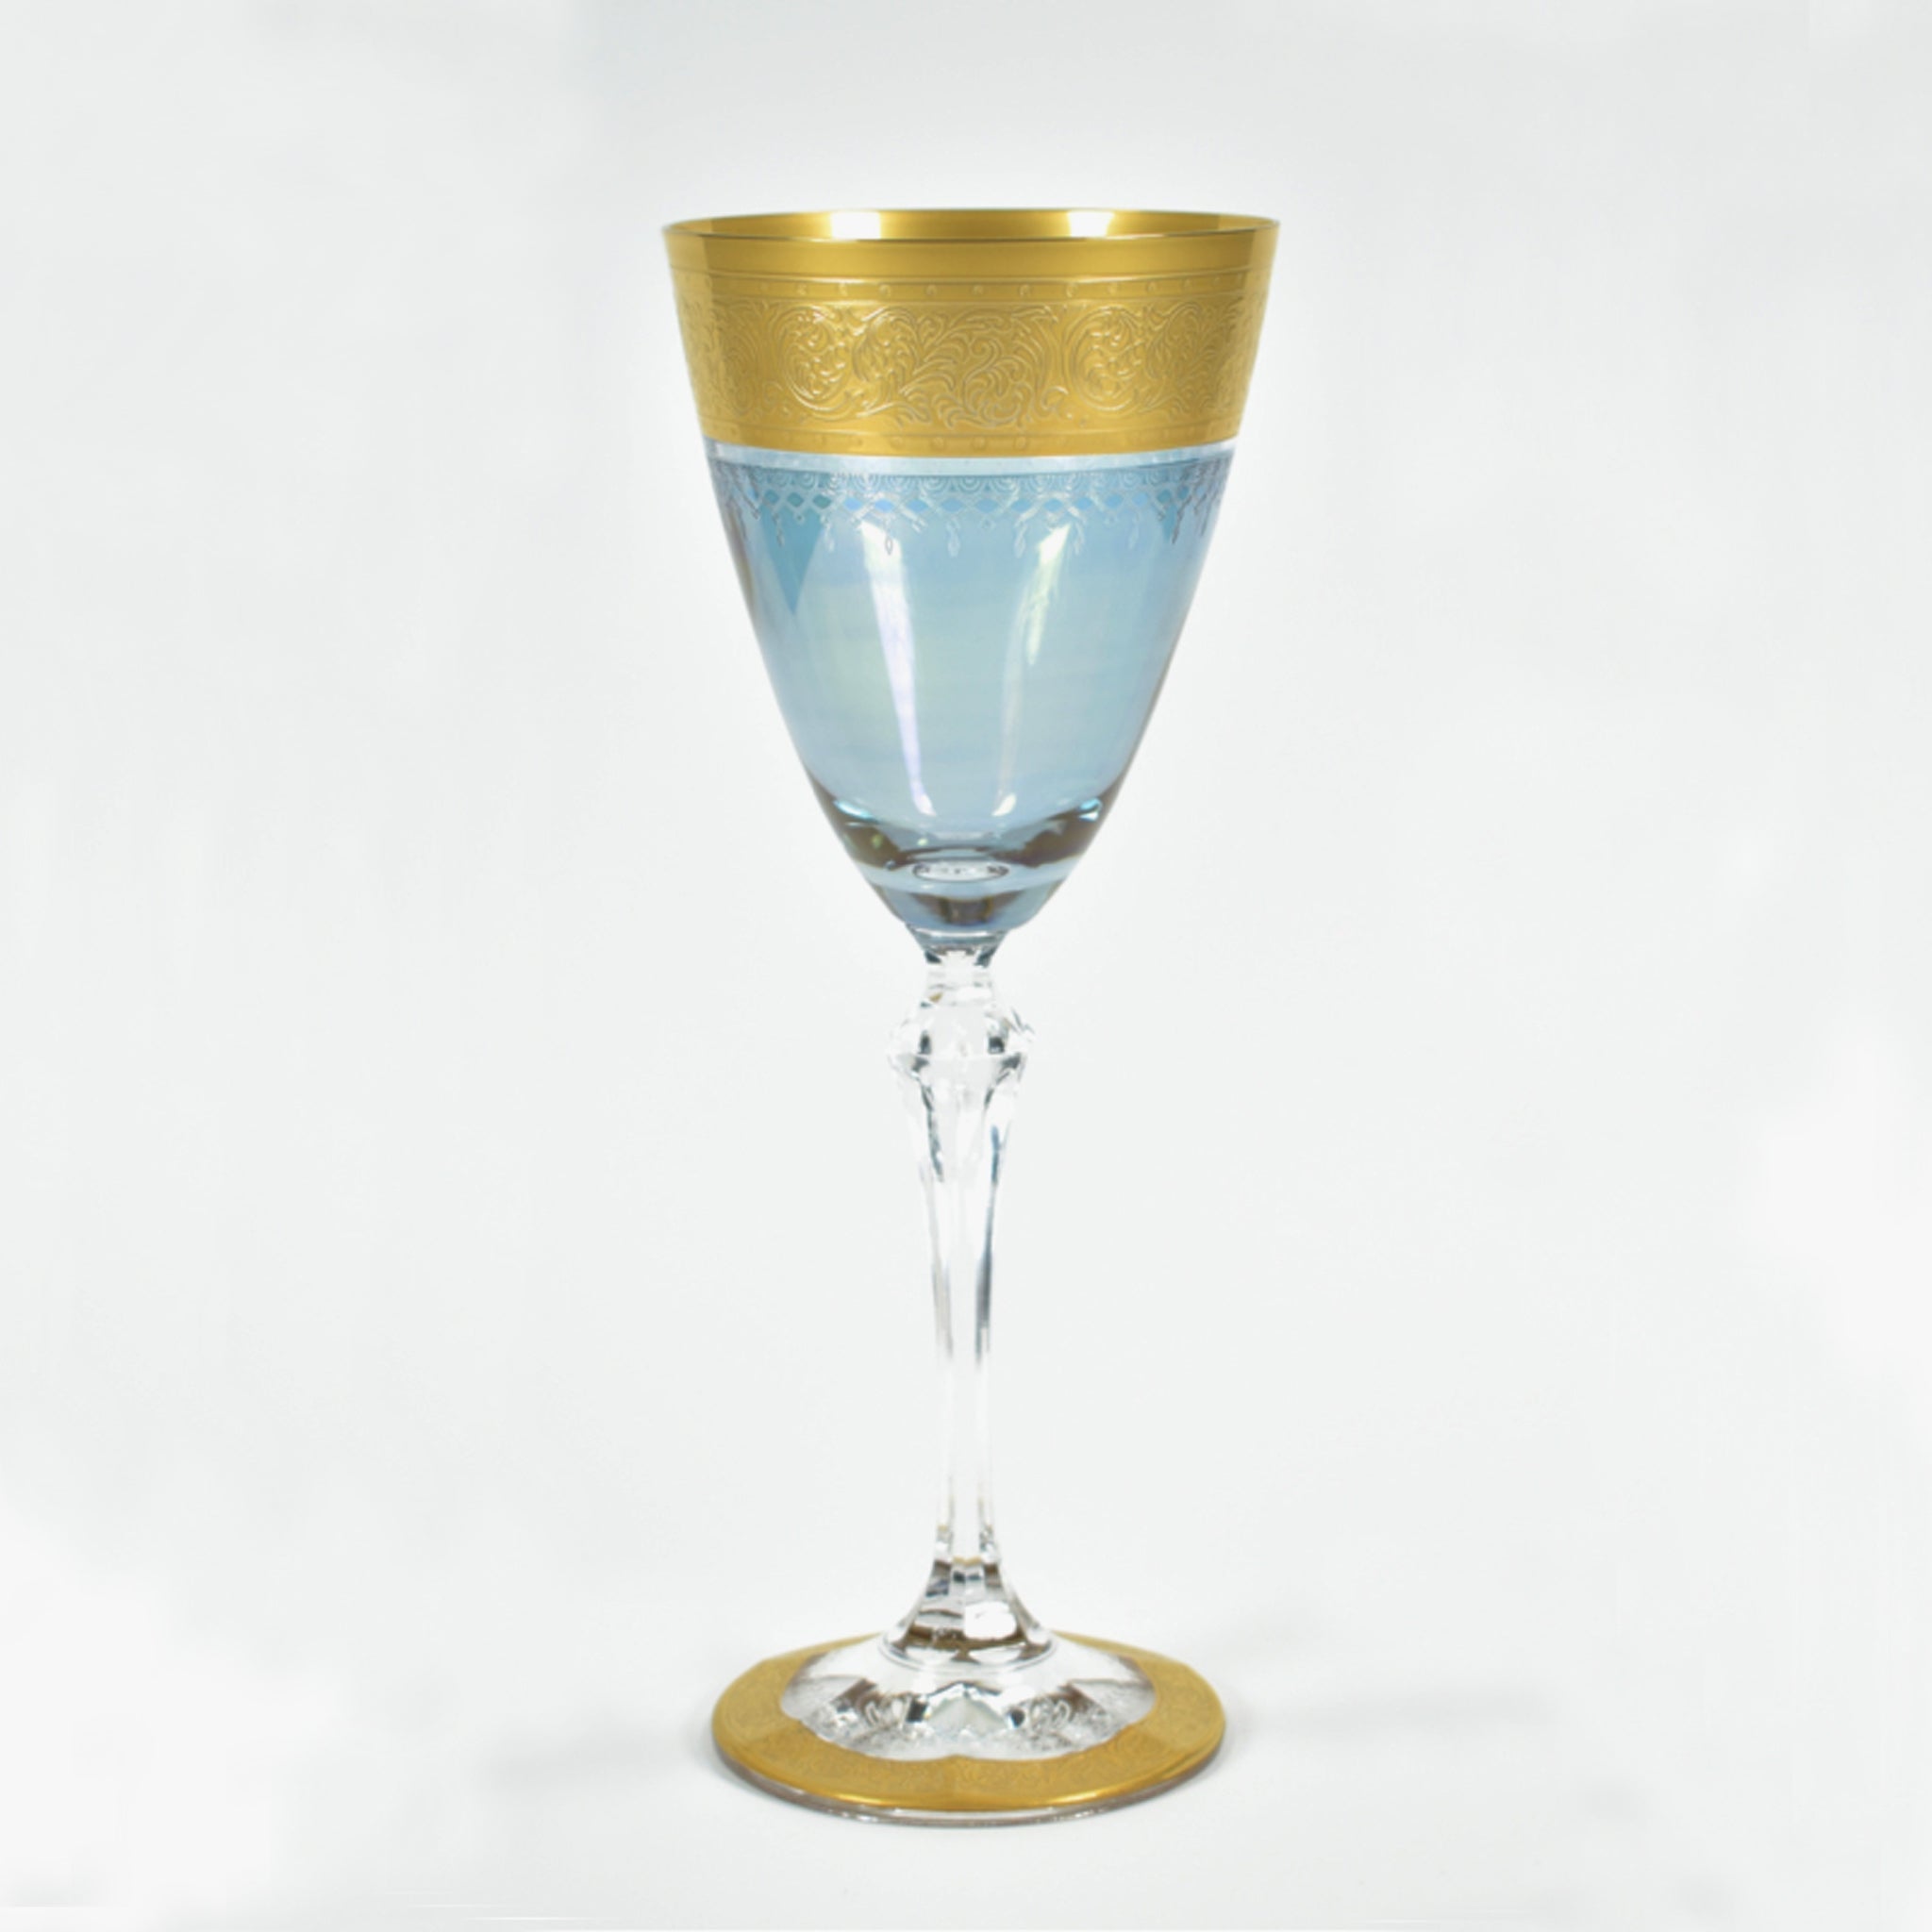 Luxoria-Castello Blu wijnglas S 190 ml - Schreuder-kraan.shop